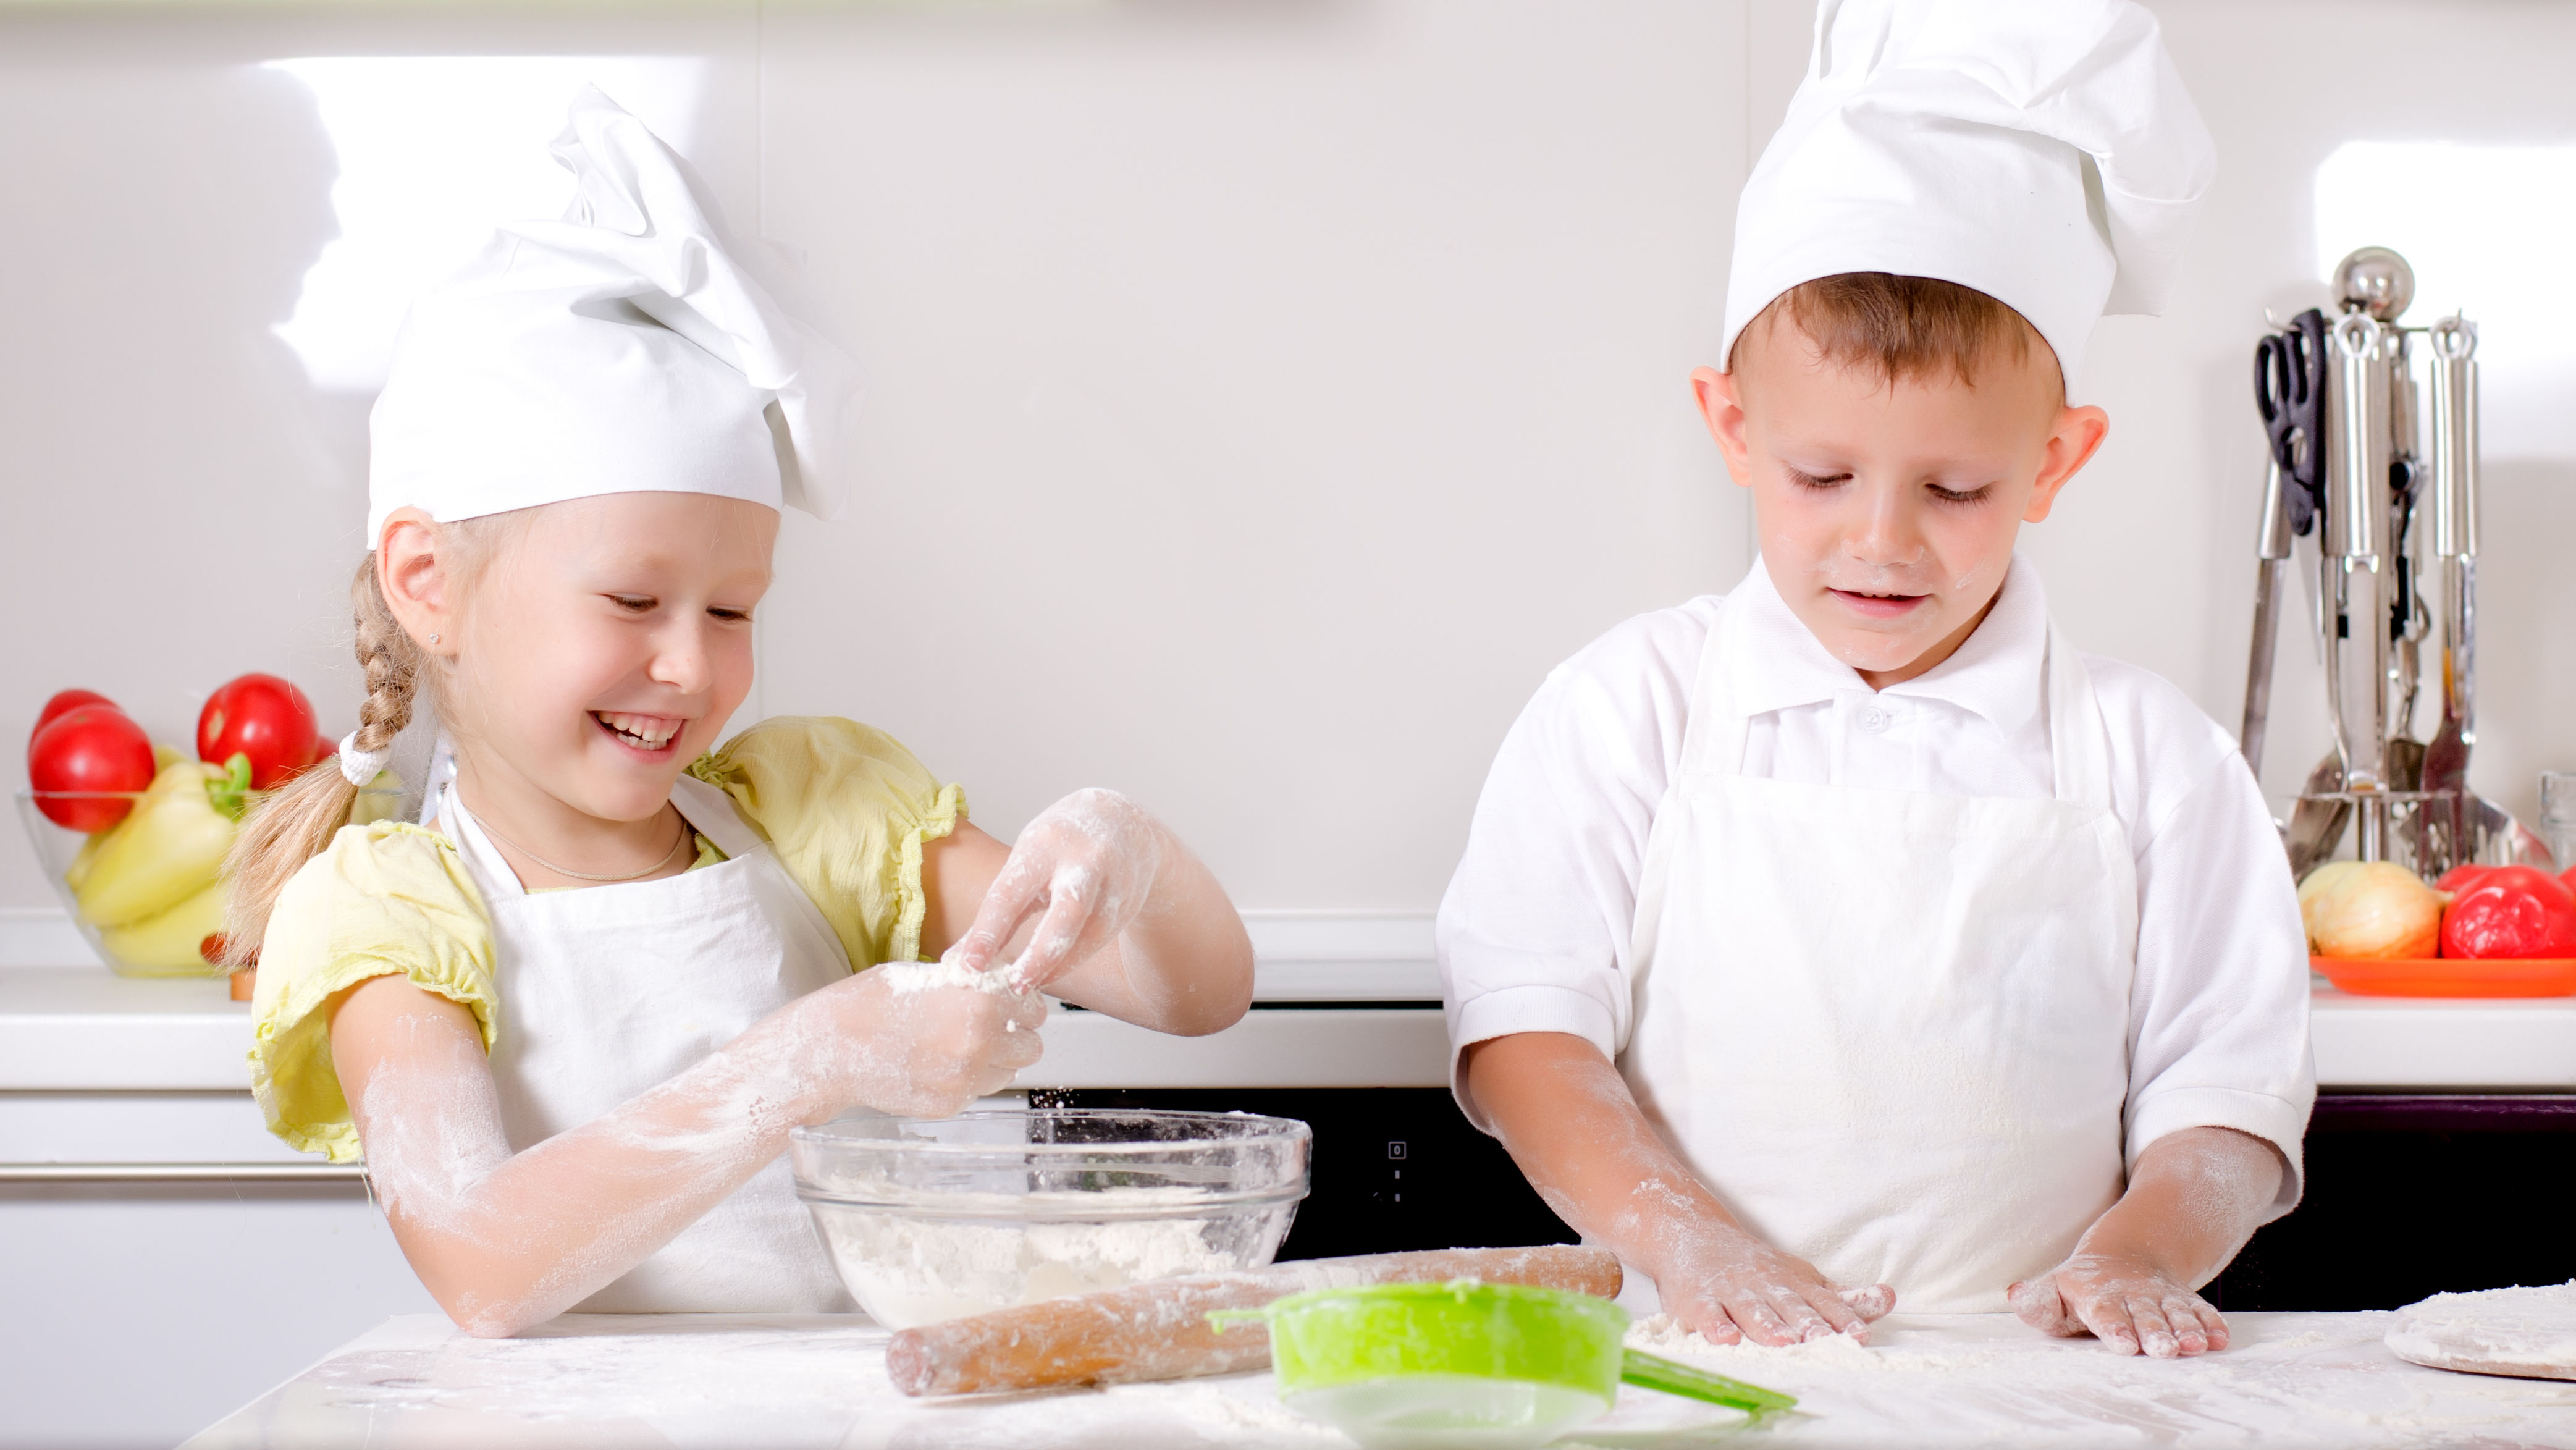 children enjoying cooking